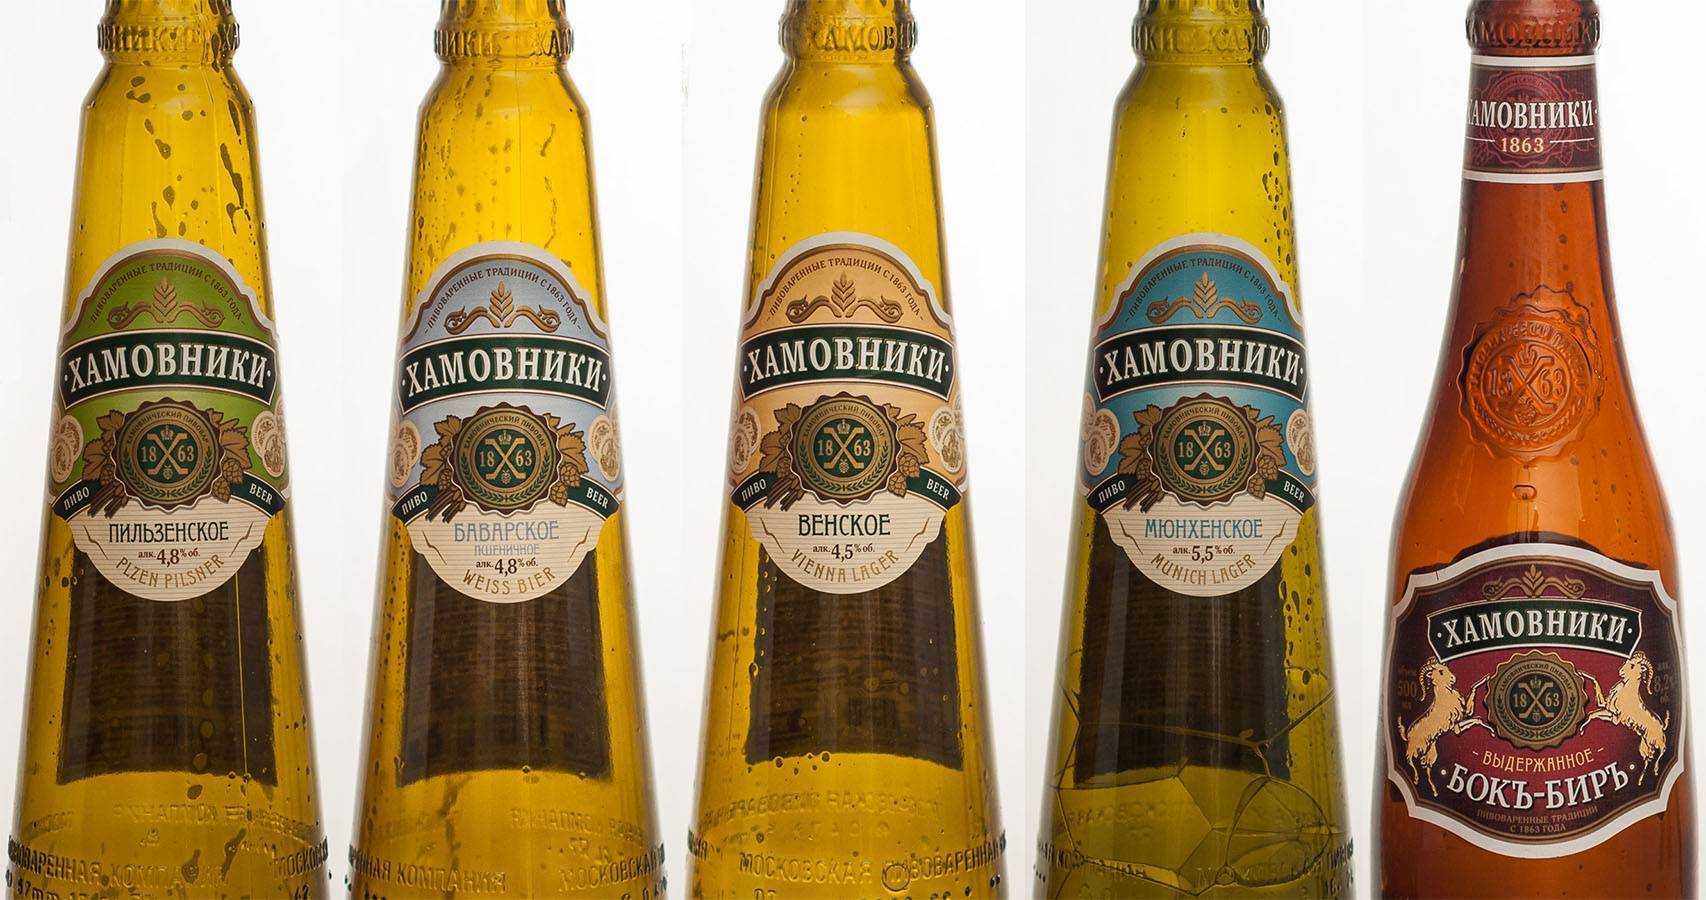 Виды венского пива "хамовники". пиво "хамовники": описание, отзывы